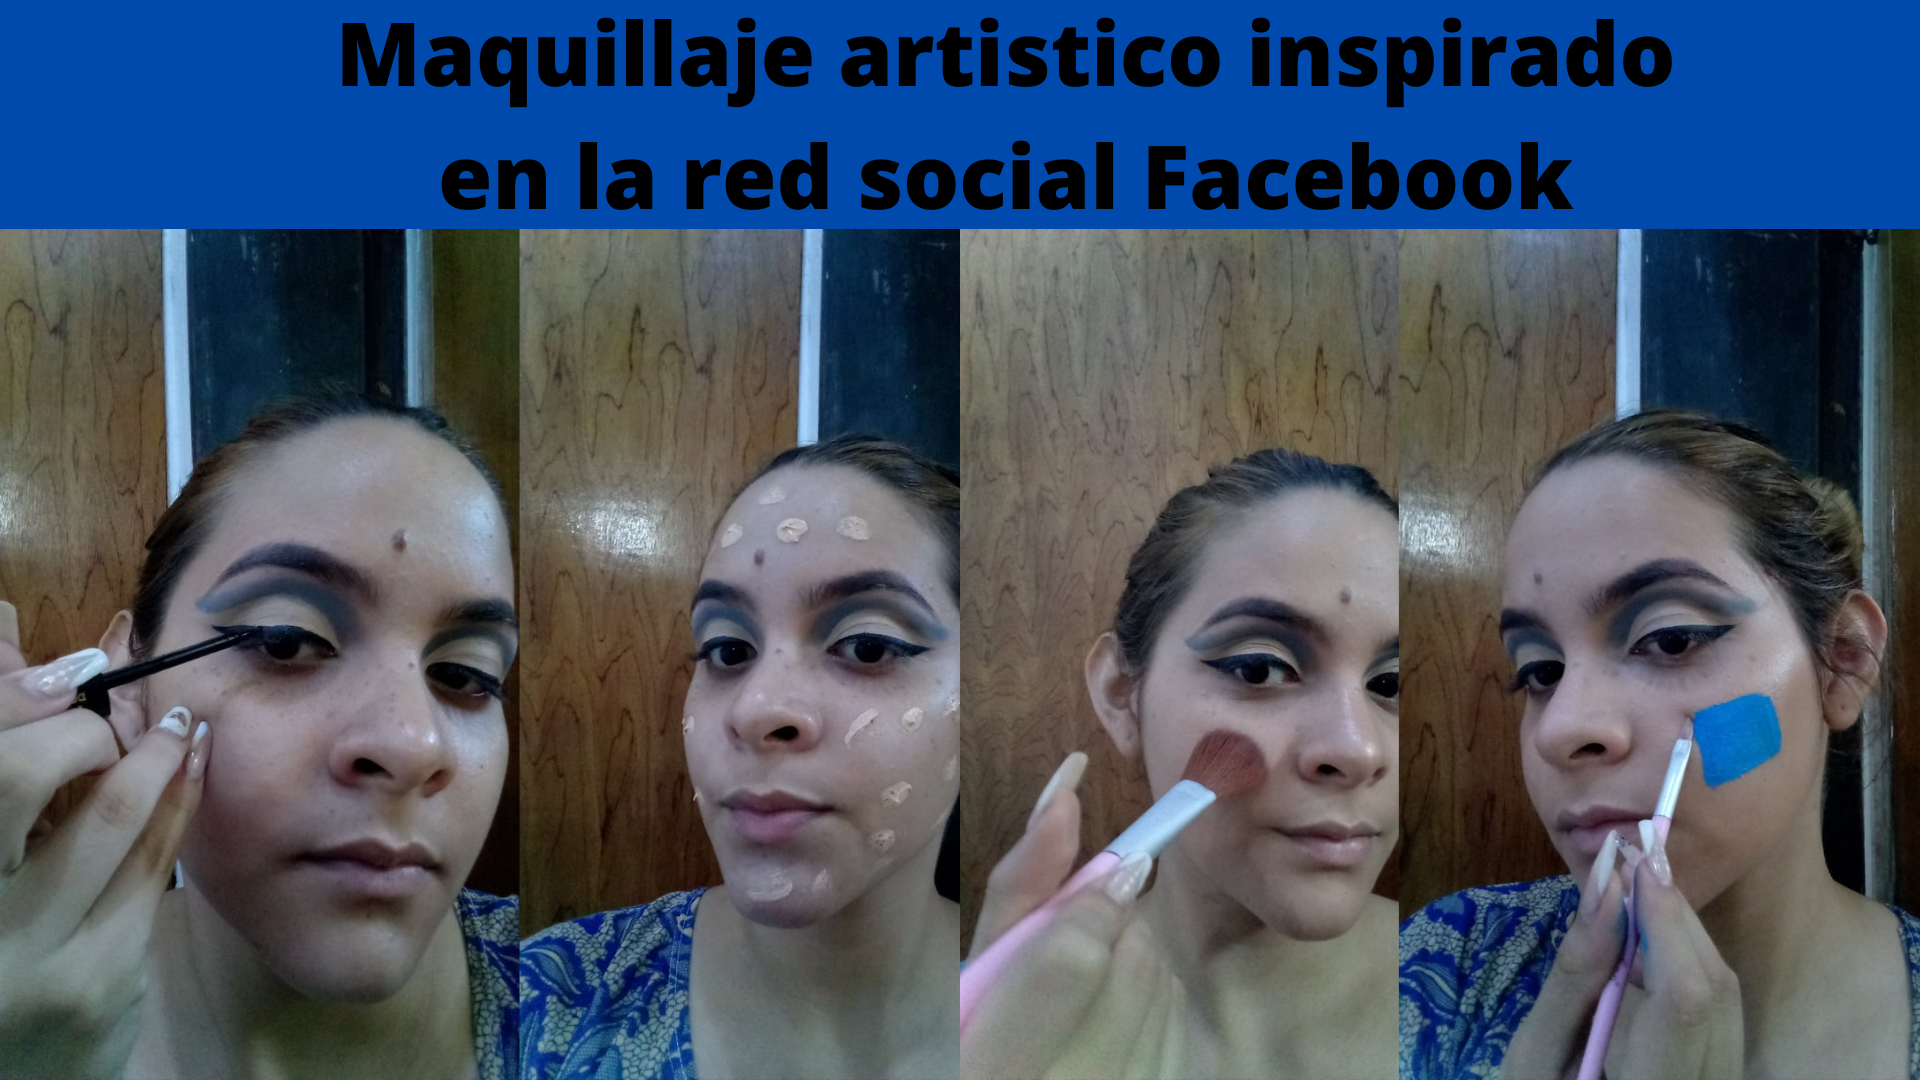 Maquillaje artistico inspirado en la red social Facebook (2).png